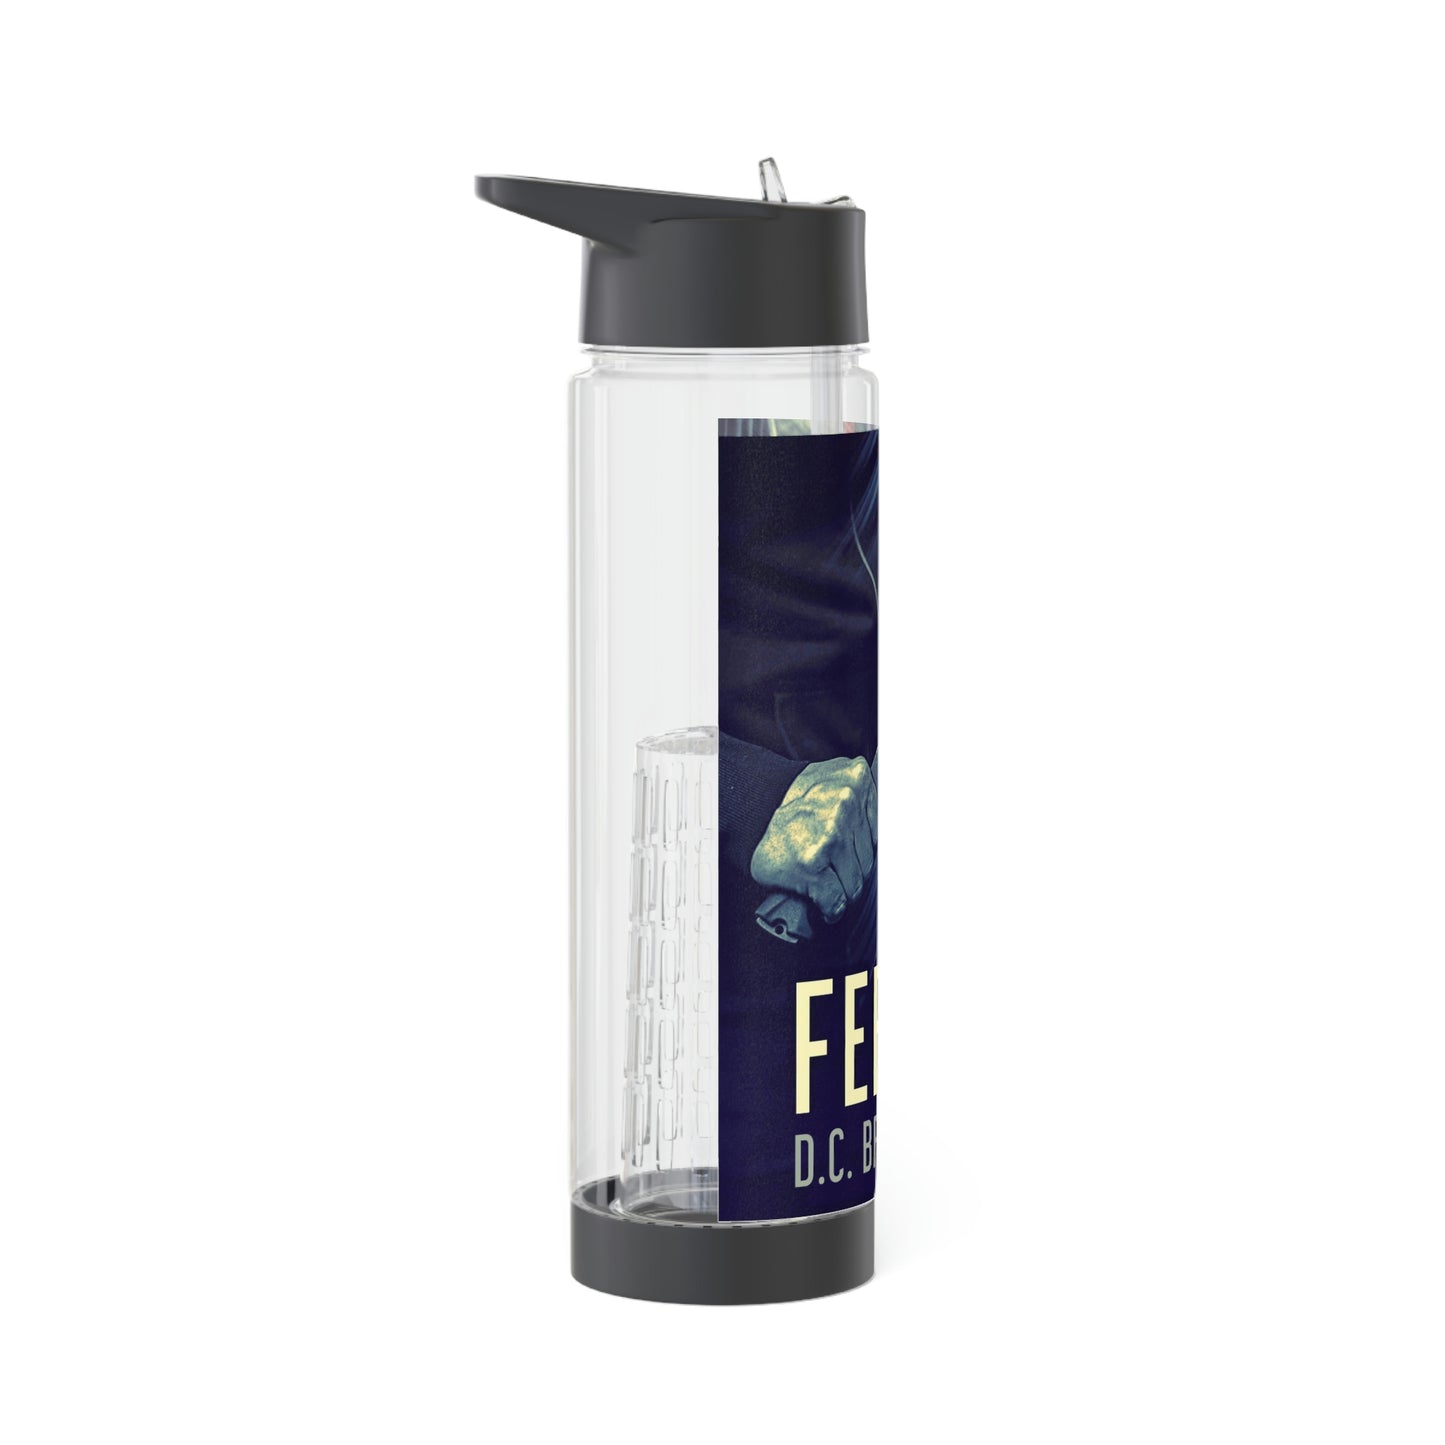 Feral! - Infuser Water Bottle